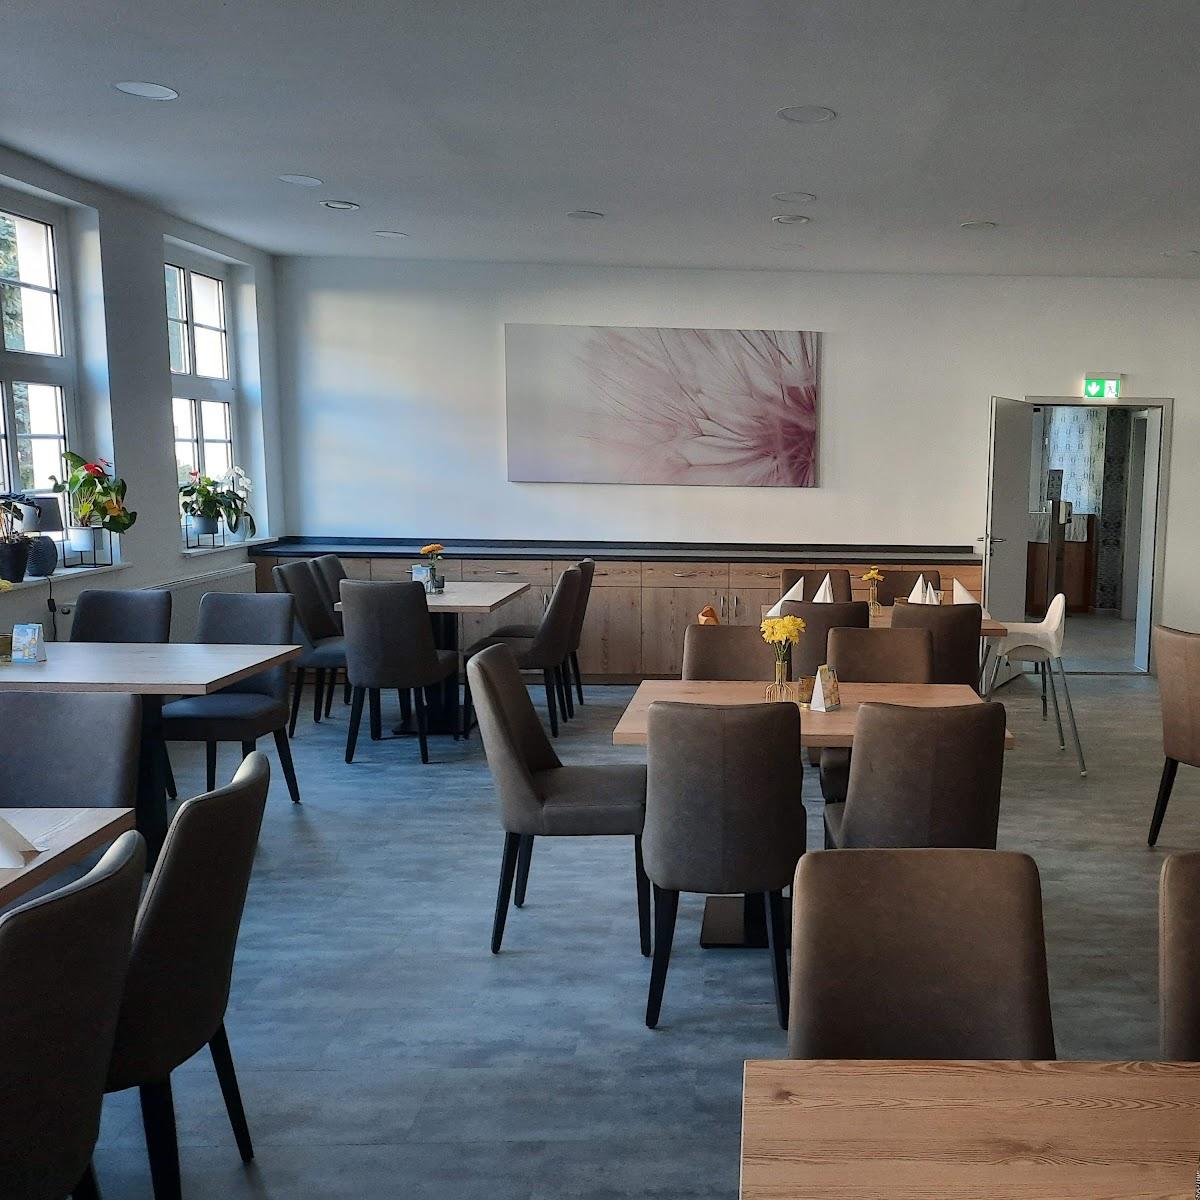 Restaurant "Gasthaus Veronikaberg" in Martinroda